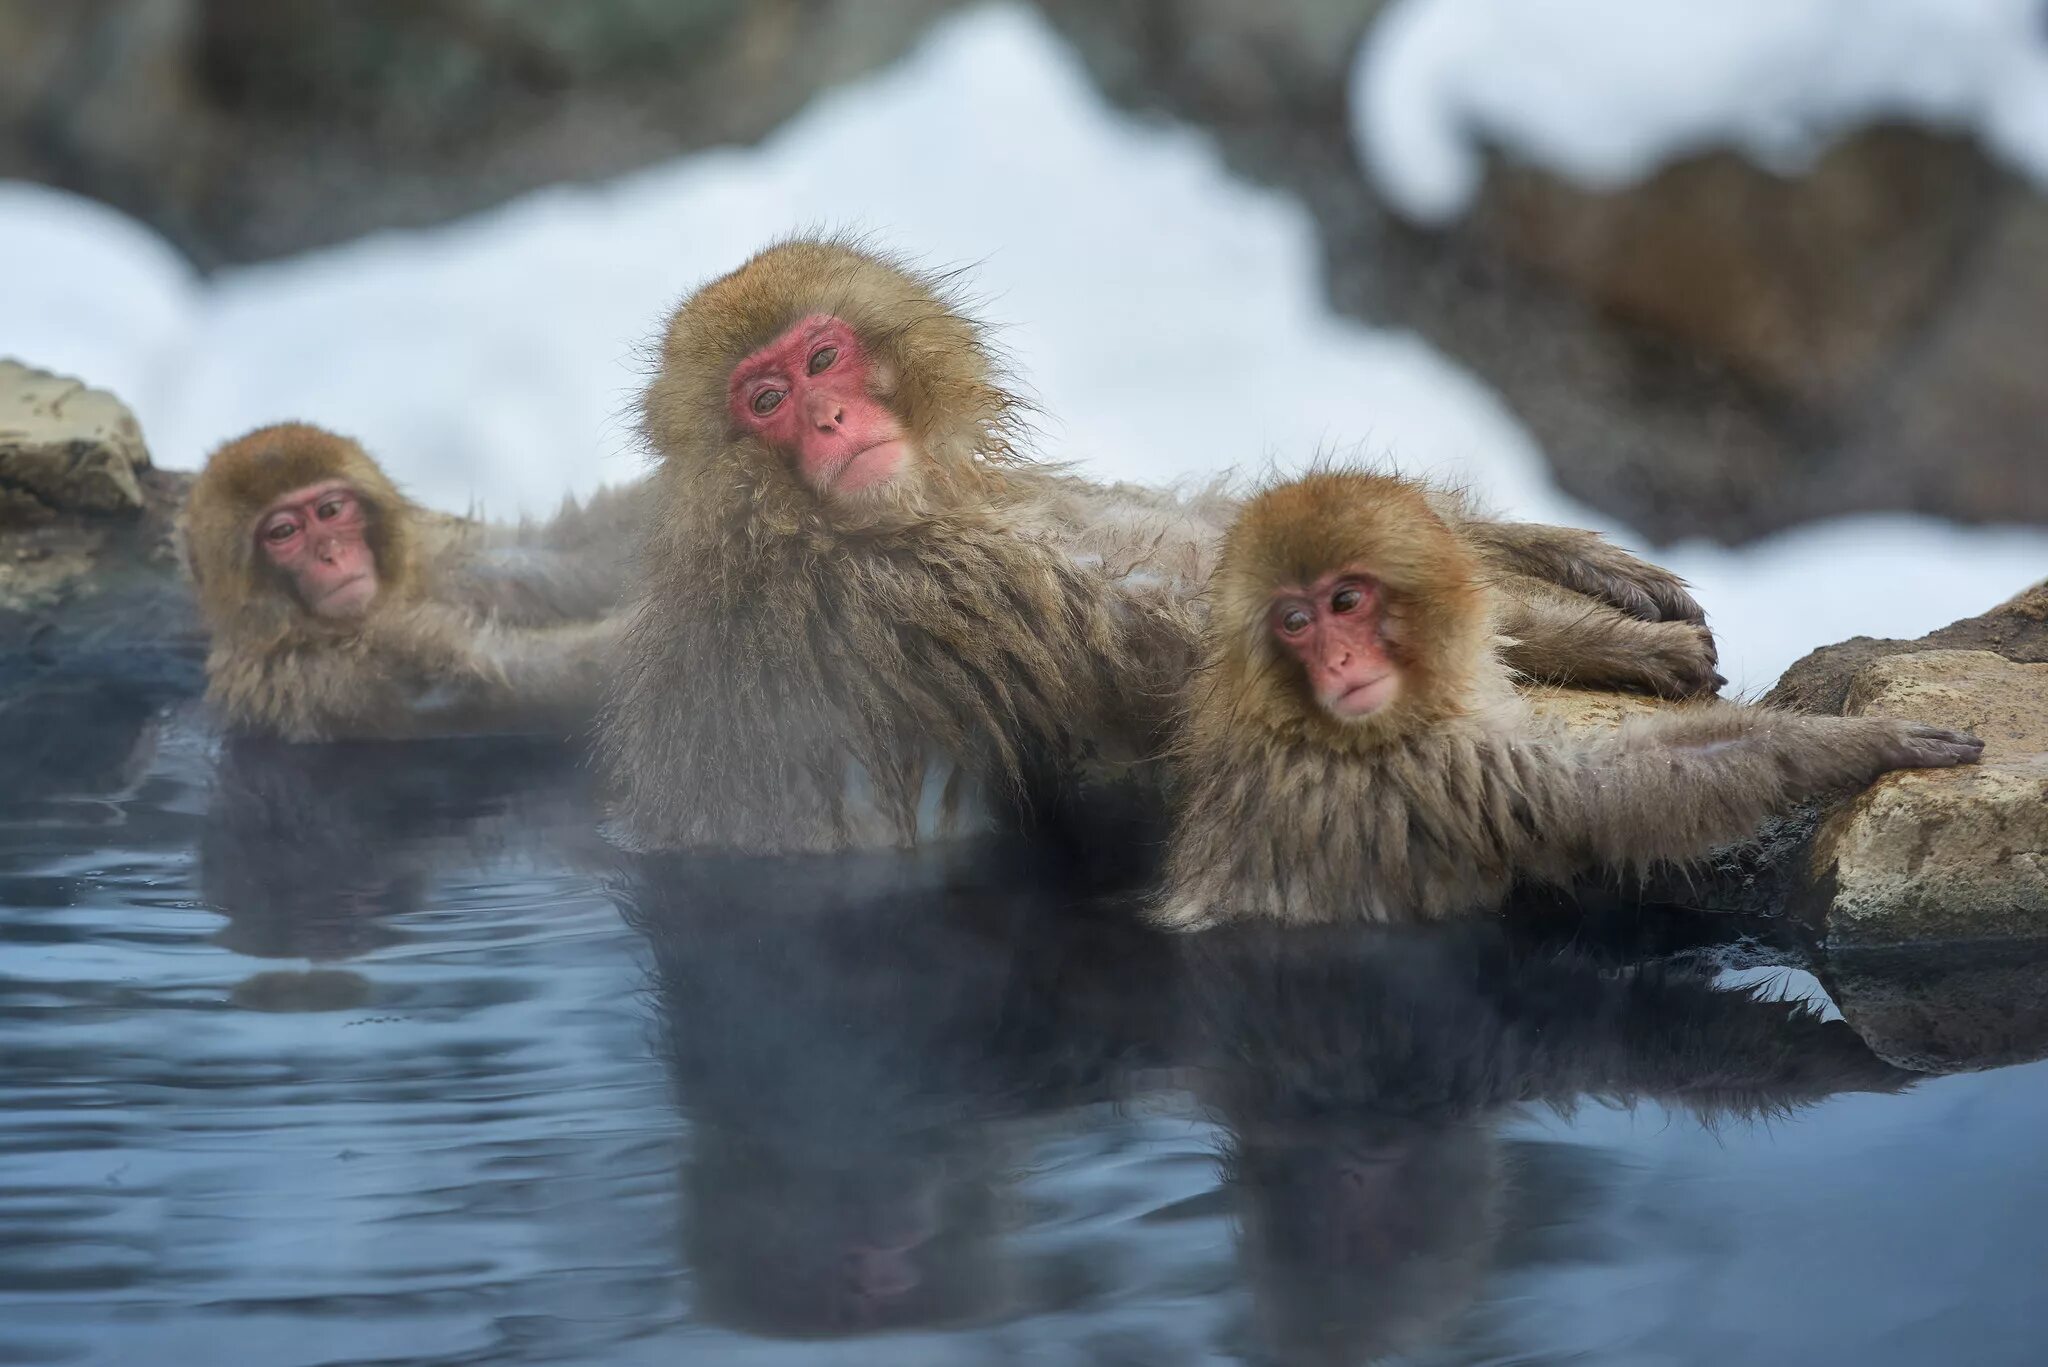 Парк Джигокудани Япония. Парк снежных обезьян Джигокудани. Макаки в горячих источниках в Японии. Горячие источники Япония макаки. Купание обезьян харламов